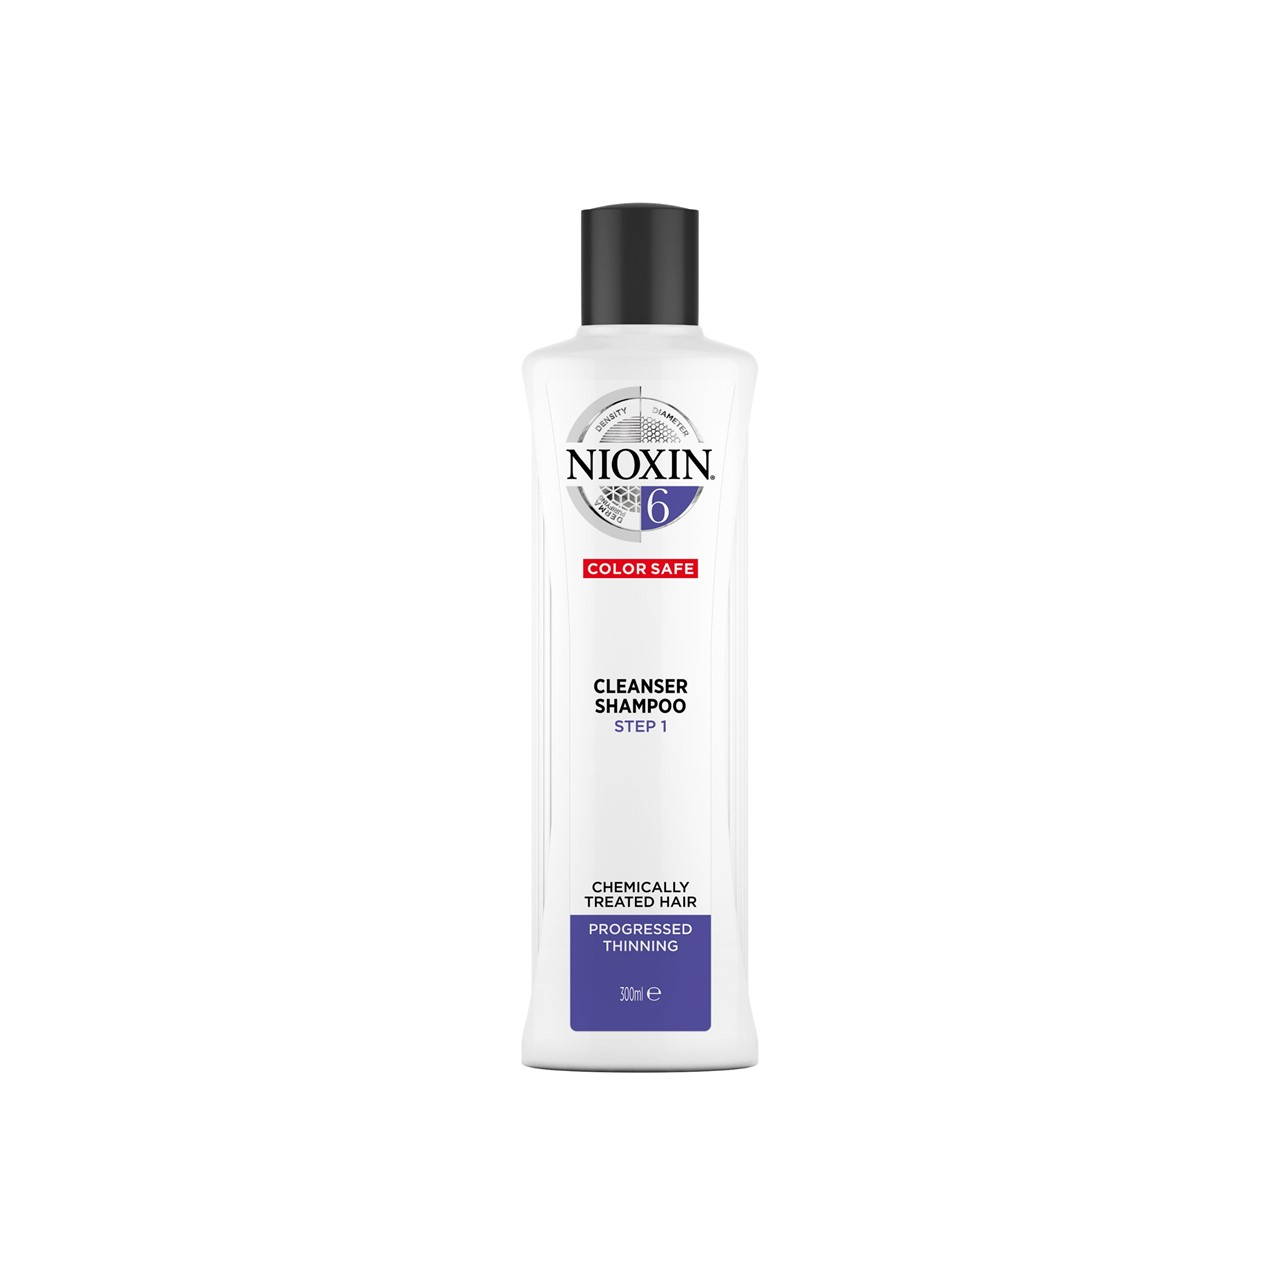 Nioxin System 6 Cleanser Shampoo 300ml (10.14fl oz)